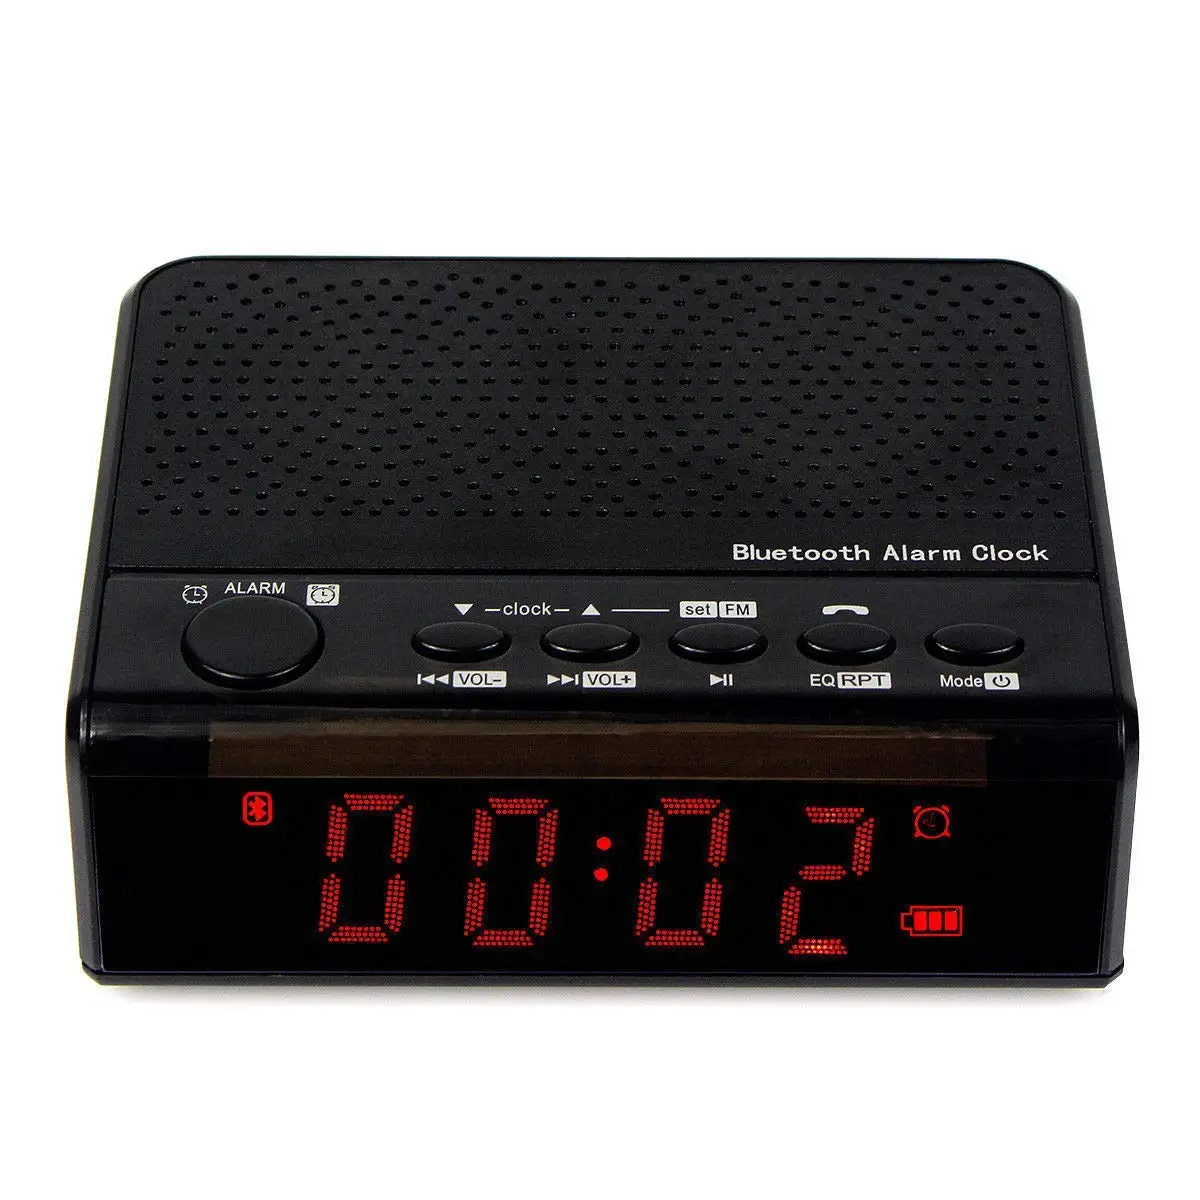 Будильник с bluetooth. Радиобудильник DIGION pte0206fm. Блютуз колонка с АЛИЭКСПРЕСС Bluetooth Alarm Clock. Радиоприемник с часами. Радиочасы на аккумуляторе.